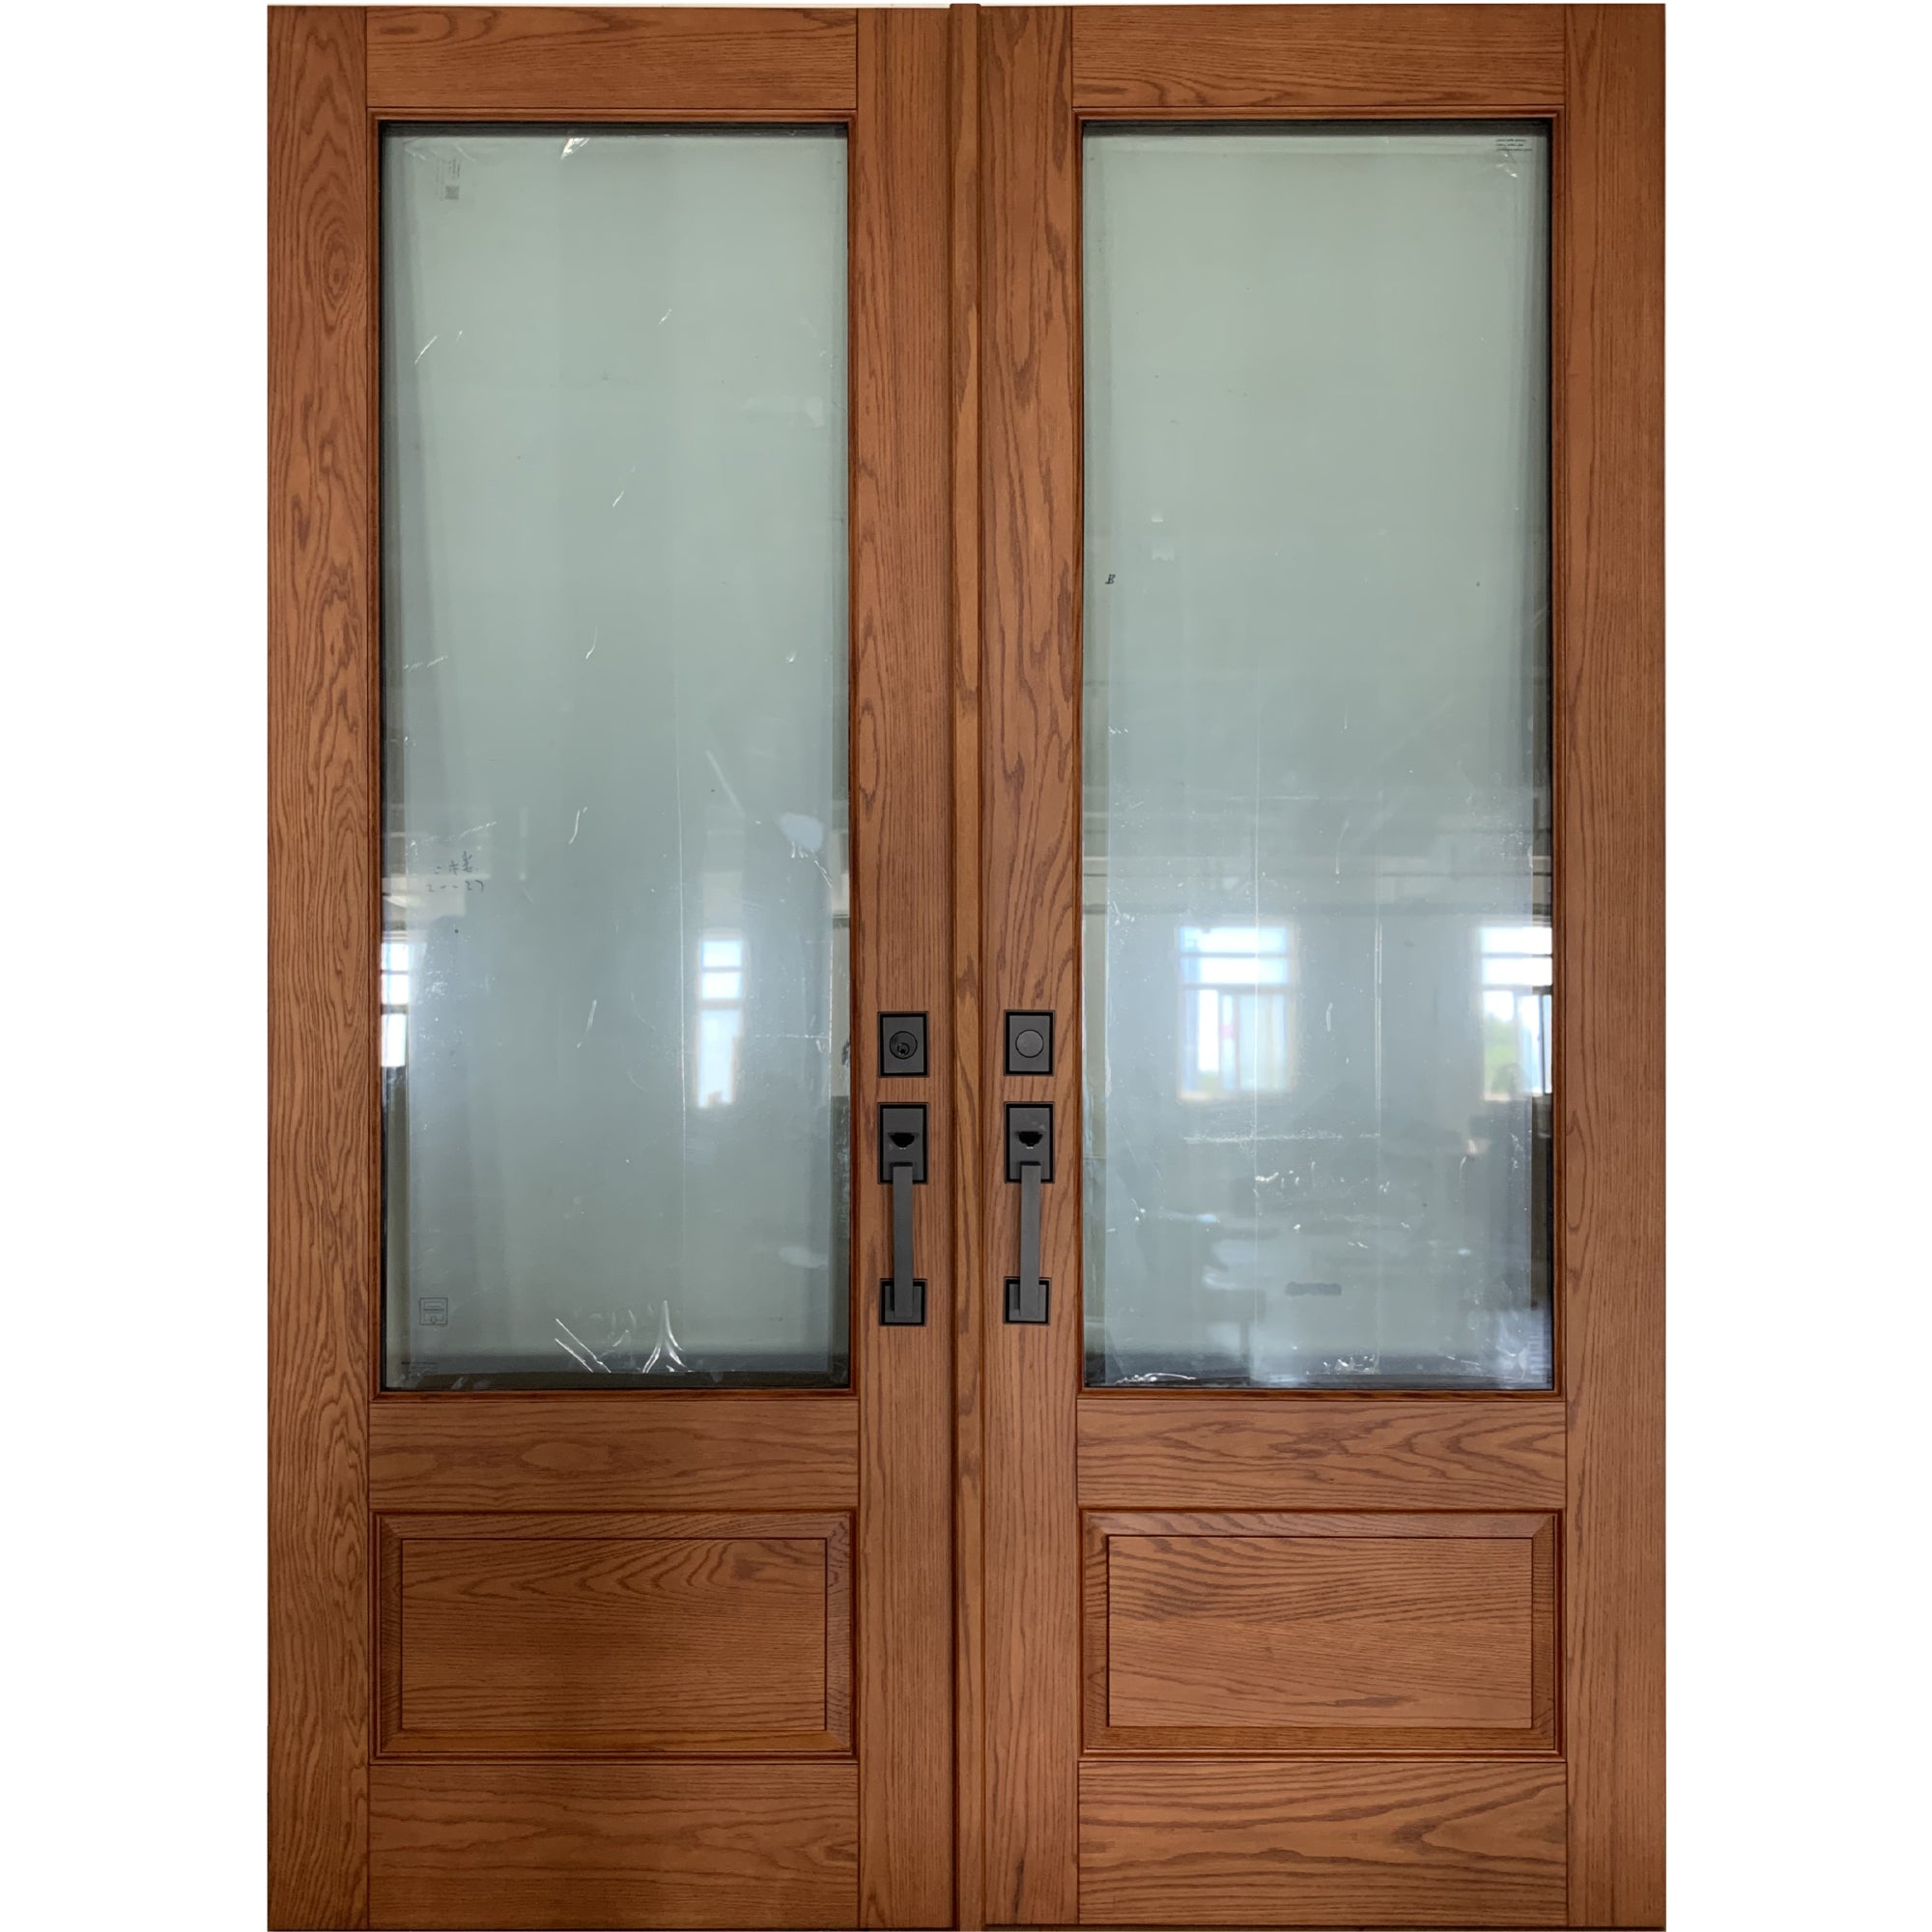 3/4 Lite Exterior Glass Wood Door